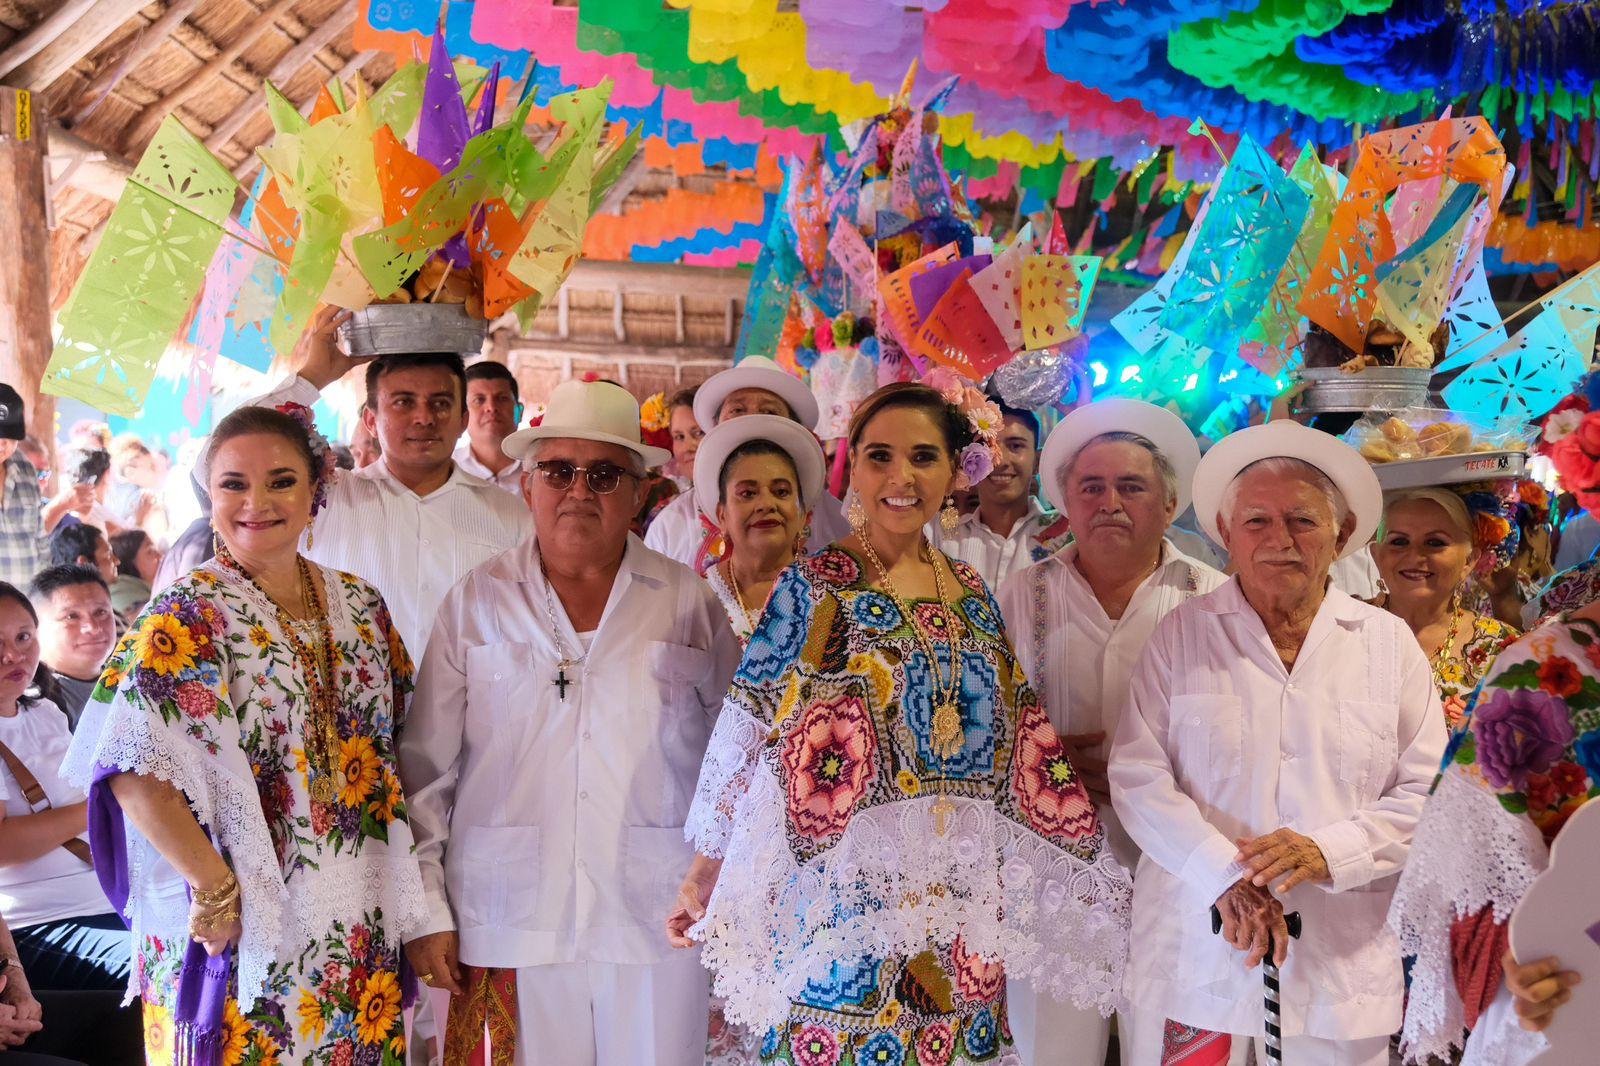 El Cedral celebra 176 años de su fiesta tradicional. La fiesta tradicional de El Cedral celebra su aniversario 176, la más antigua de Cozumel, y